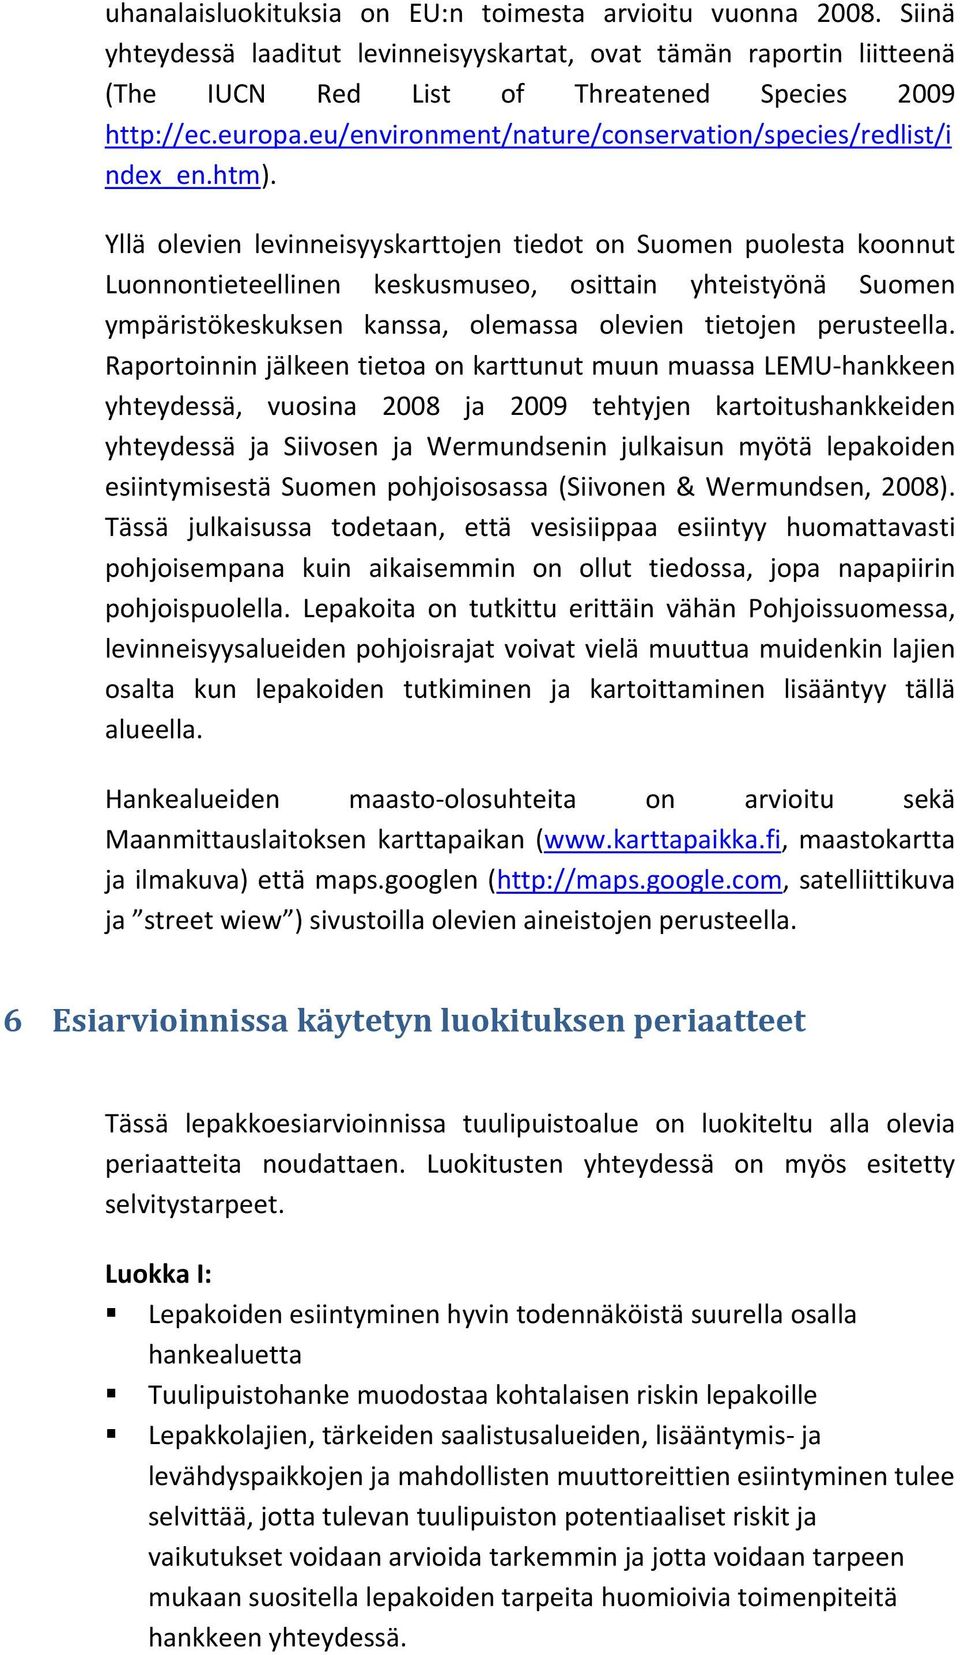 Yllä olevien levinneisyyskarttojen tiedot on Suomen puolesta koonnut Luonnontieteellinen keskusmuseo, osittain yhteistyönä Suomen ympäristökeskuksen kanssa, olemassa olevien tietojen perusteella.